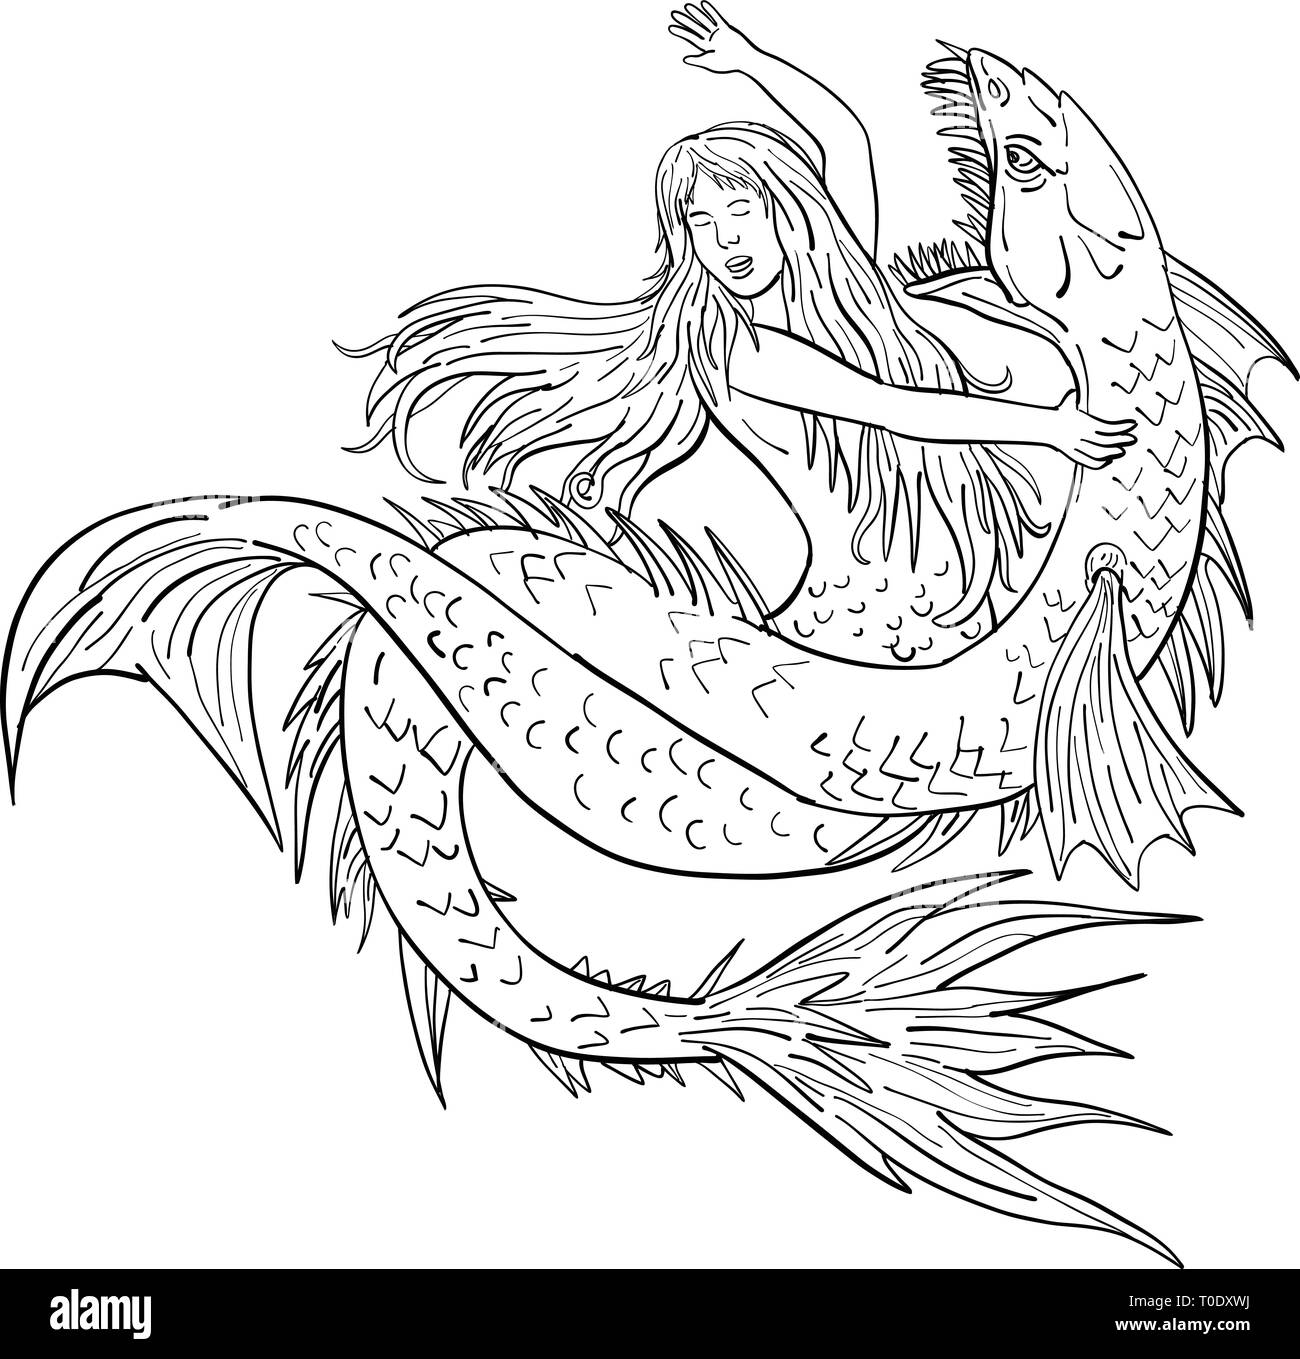 Croquis dessin illustration d'un style ou une sirène siren combats ou aux prises avec un serpent de mer ou monstre isolé sur fond blanc. Illustration de Vecteur